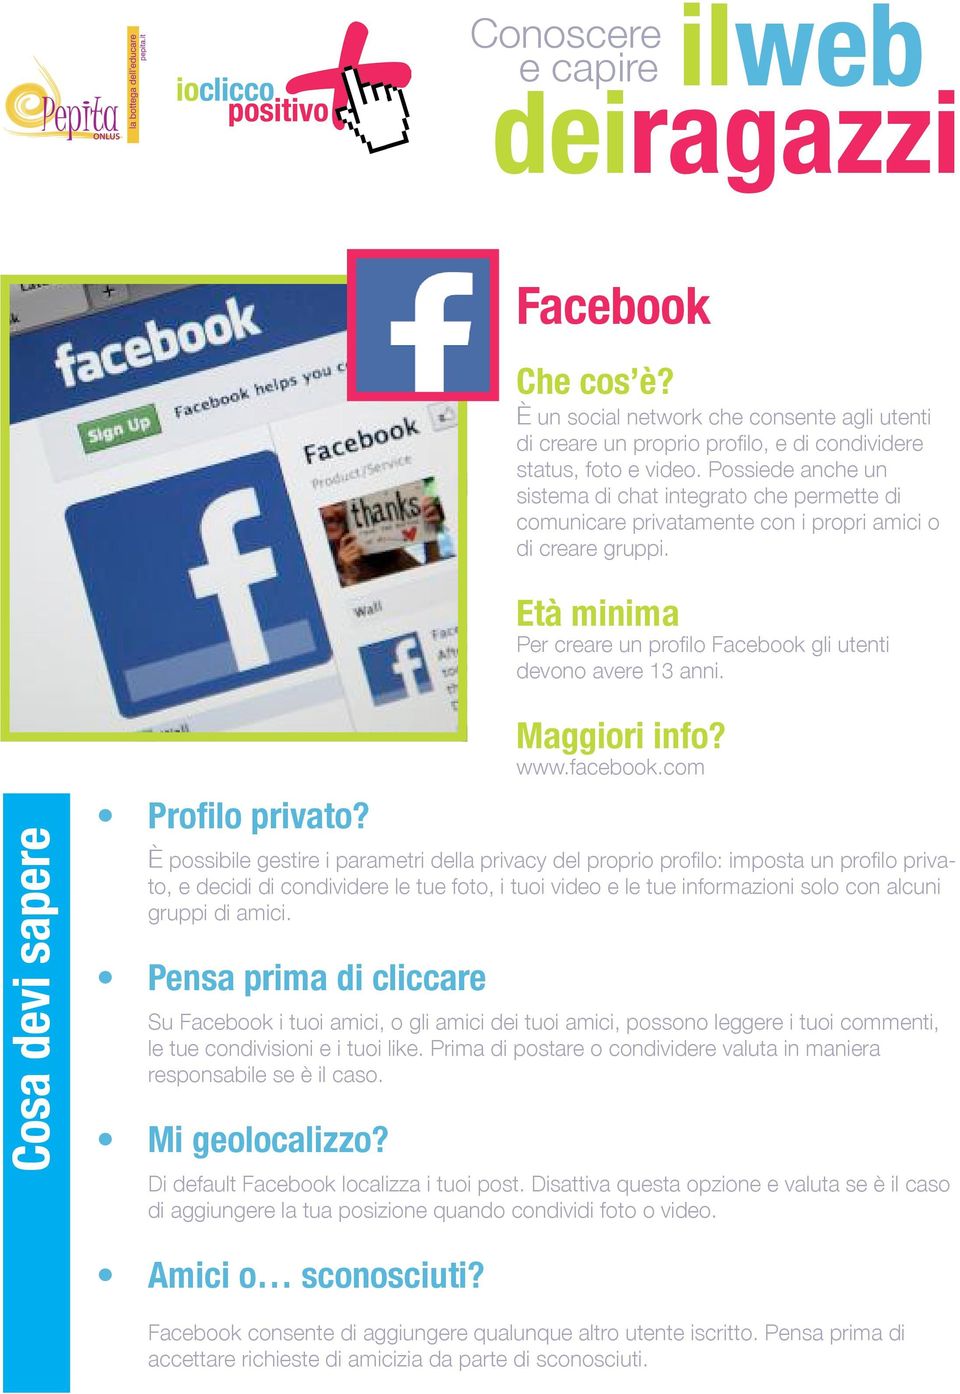 Profilo privato? www.facebook.